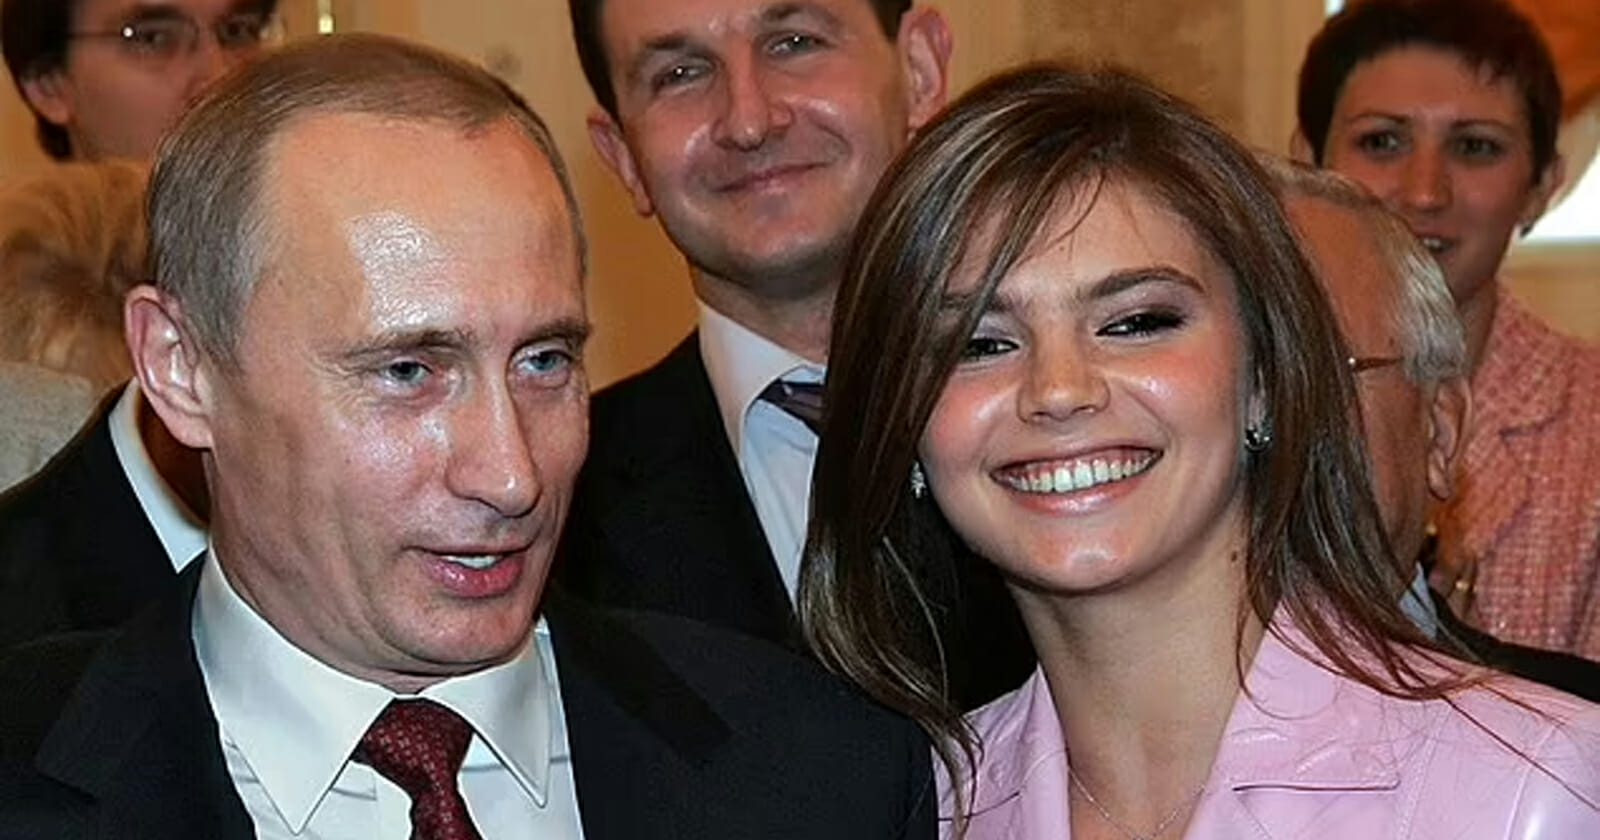 فلاديمير بوتين مع عشيقته الشابة watanserb.com